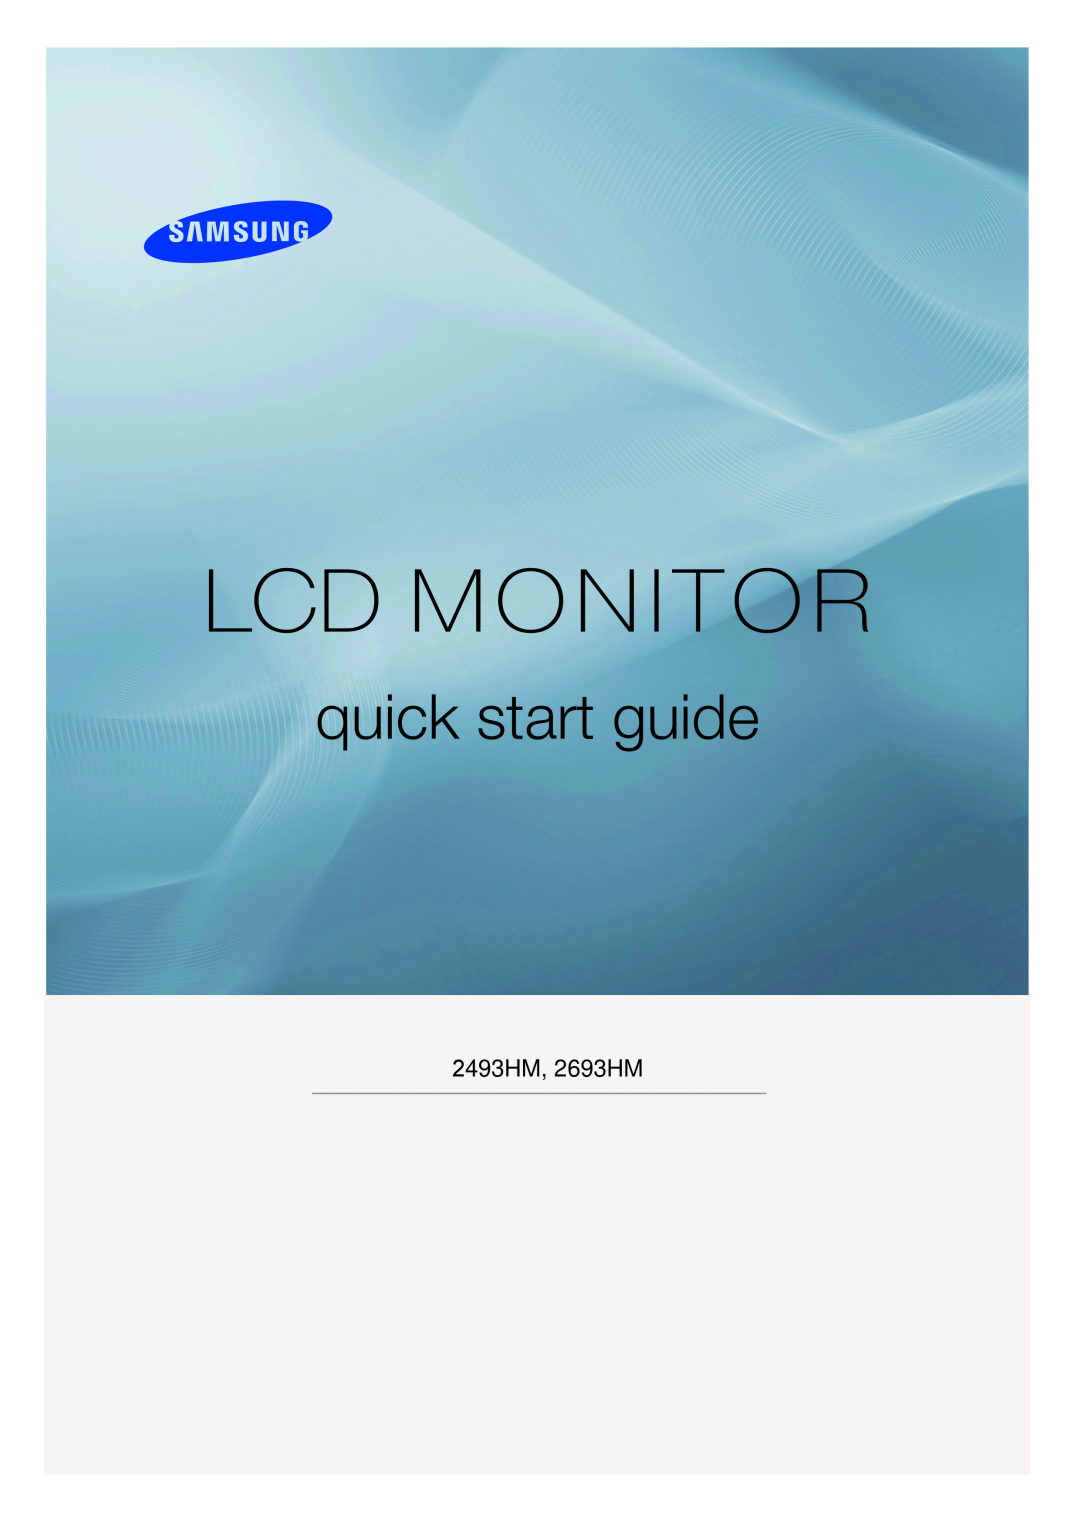 Samsung LS32BHLNB/EDC, LS26KIERBV/EDC, LS24KIEEFV/EDC, LS24KIERBQ/EDC manual Lcd Monitor, quick start guide, 2493HM, 2693HM 